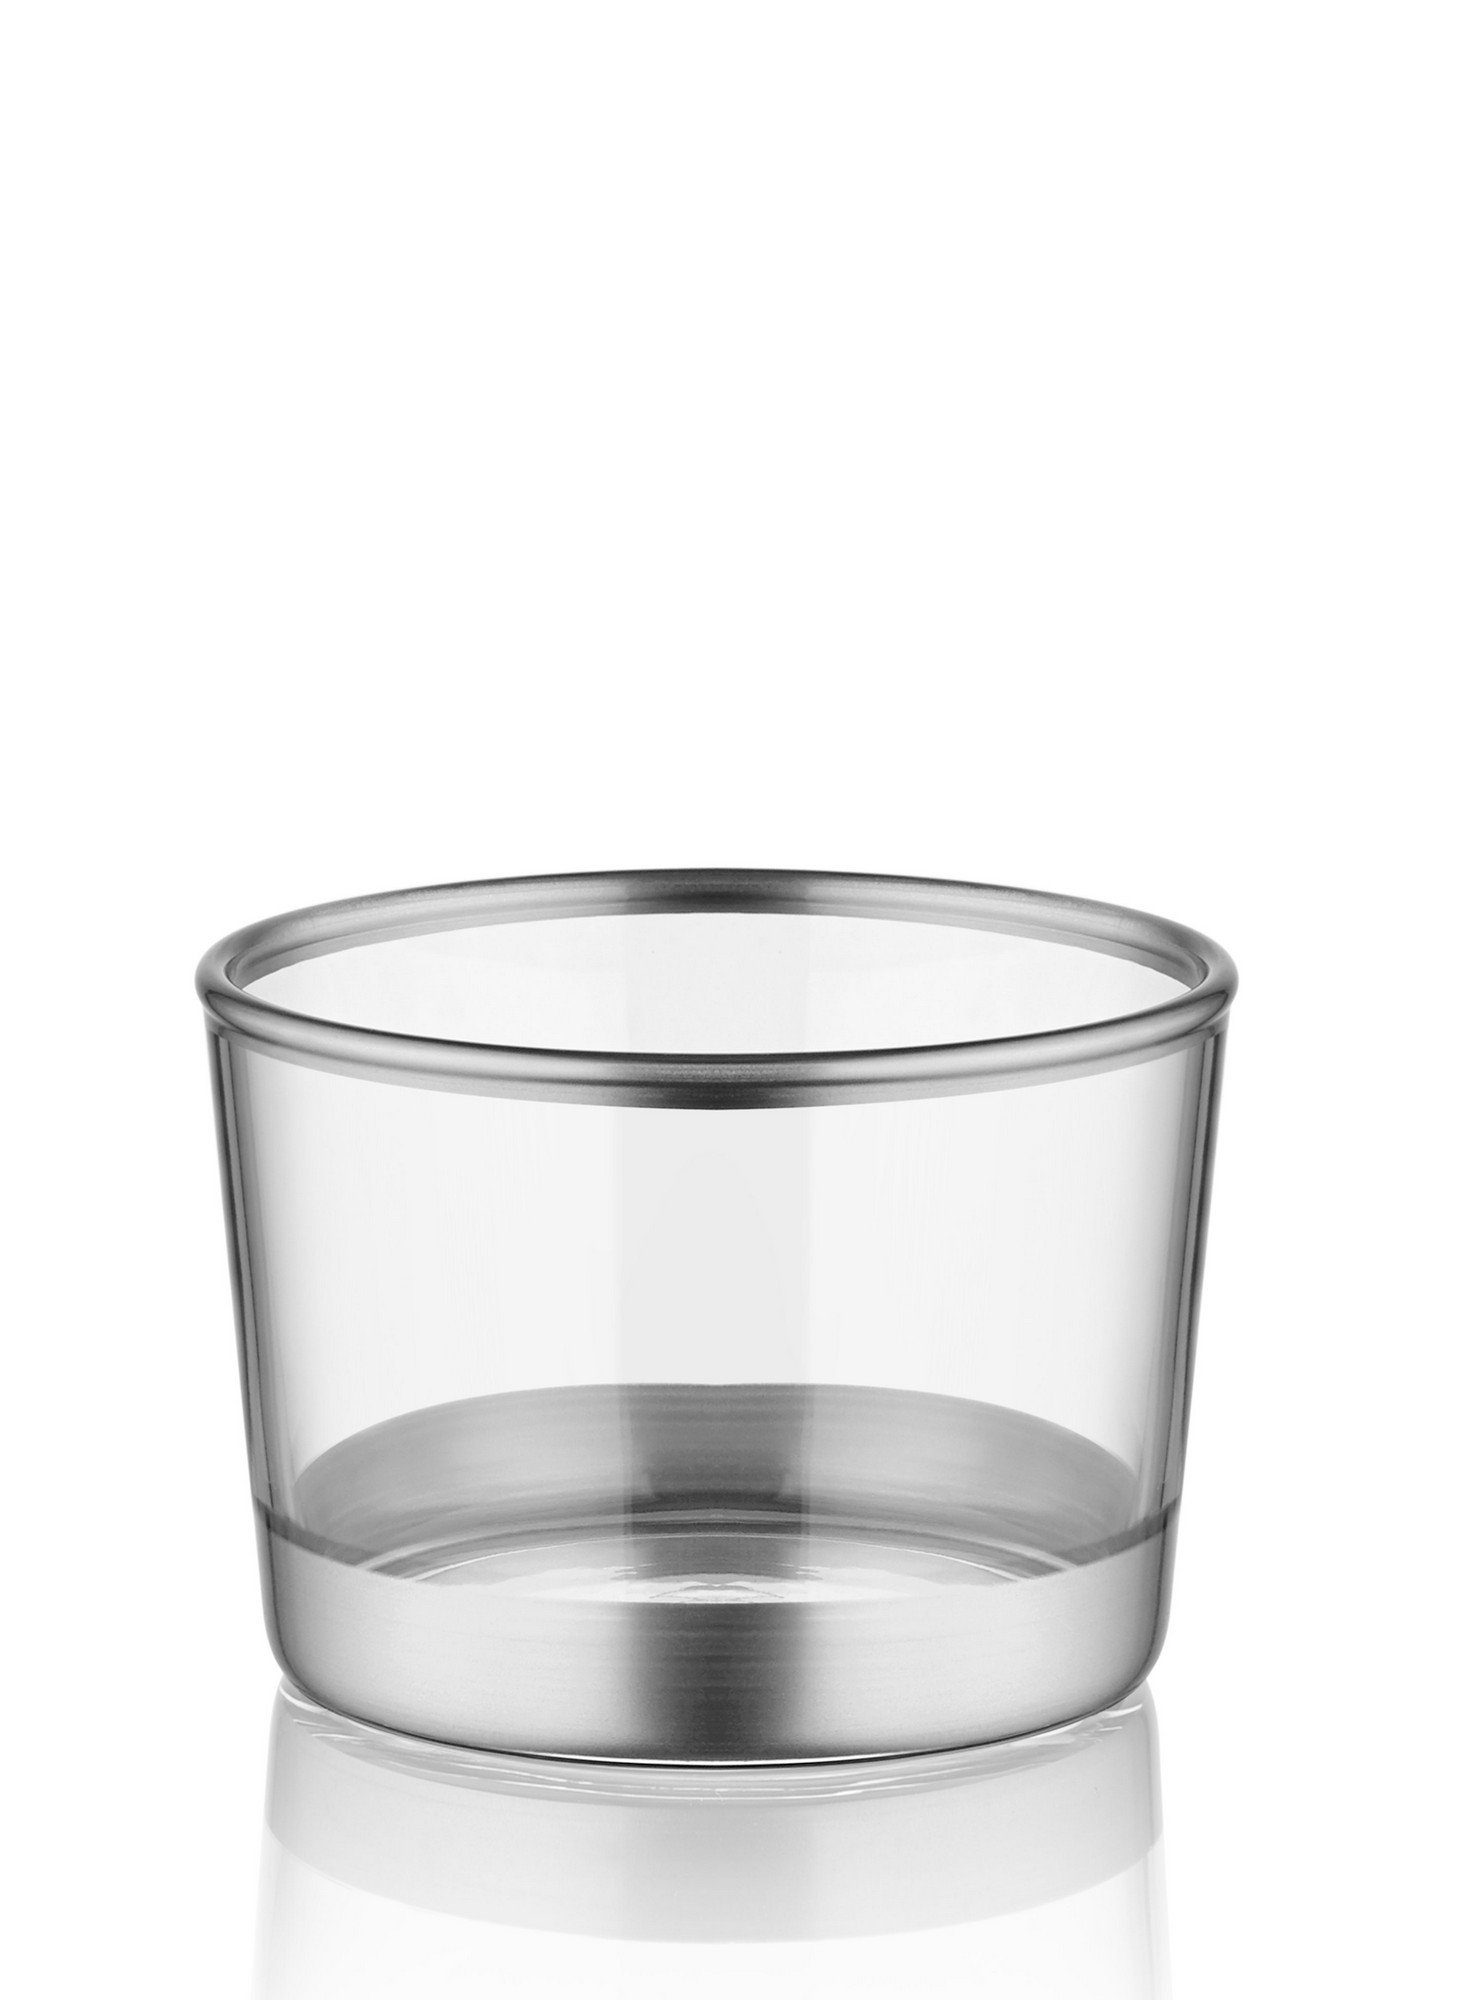 TMA4725, 100% Silber, Schüssel Glas Schüsseln, Hermia Concept